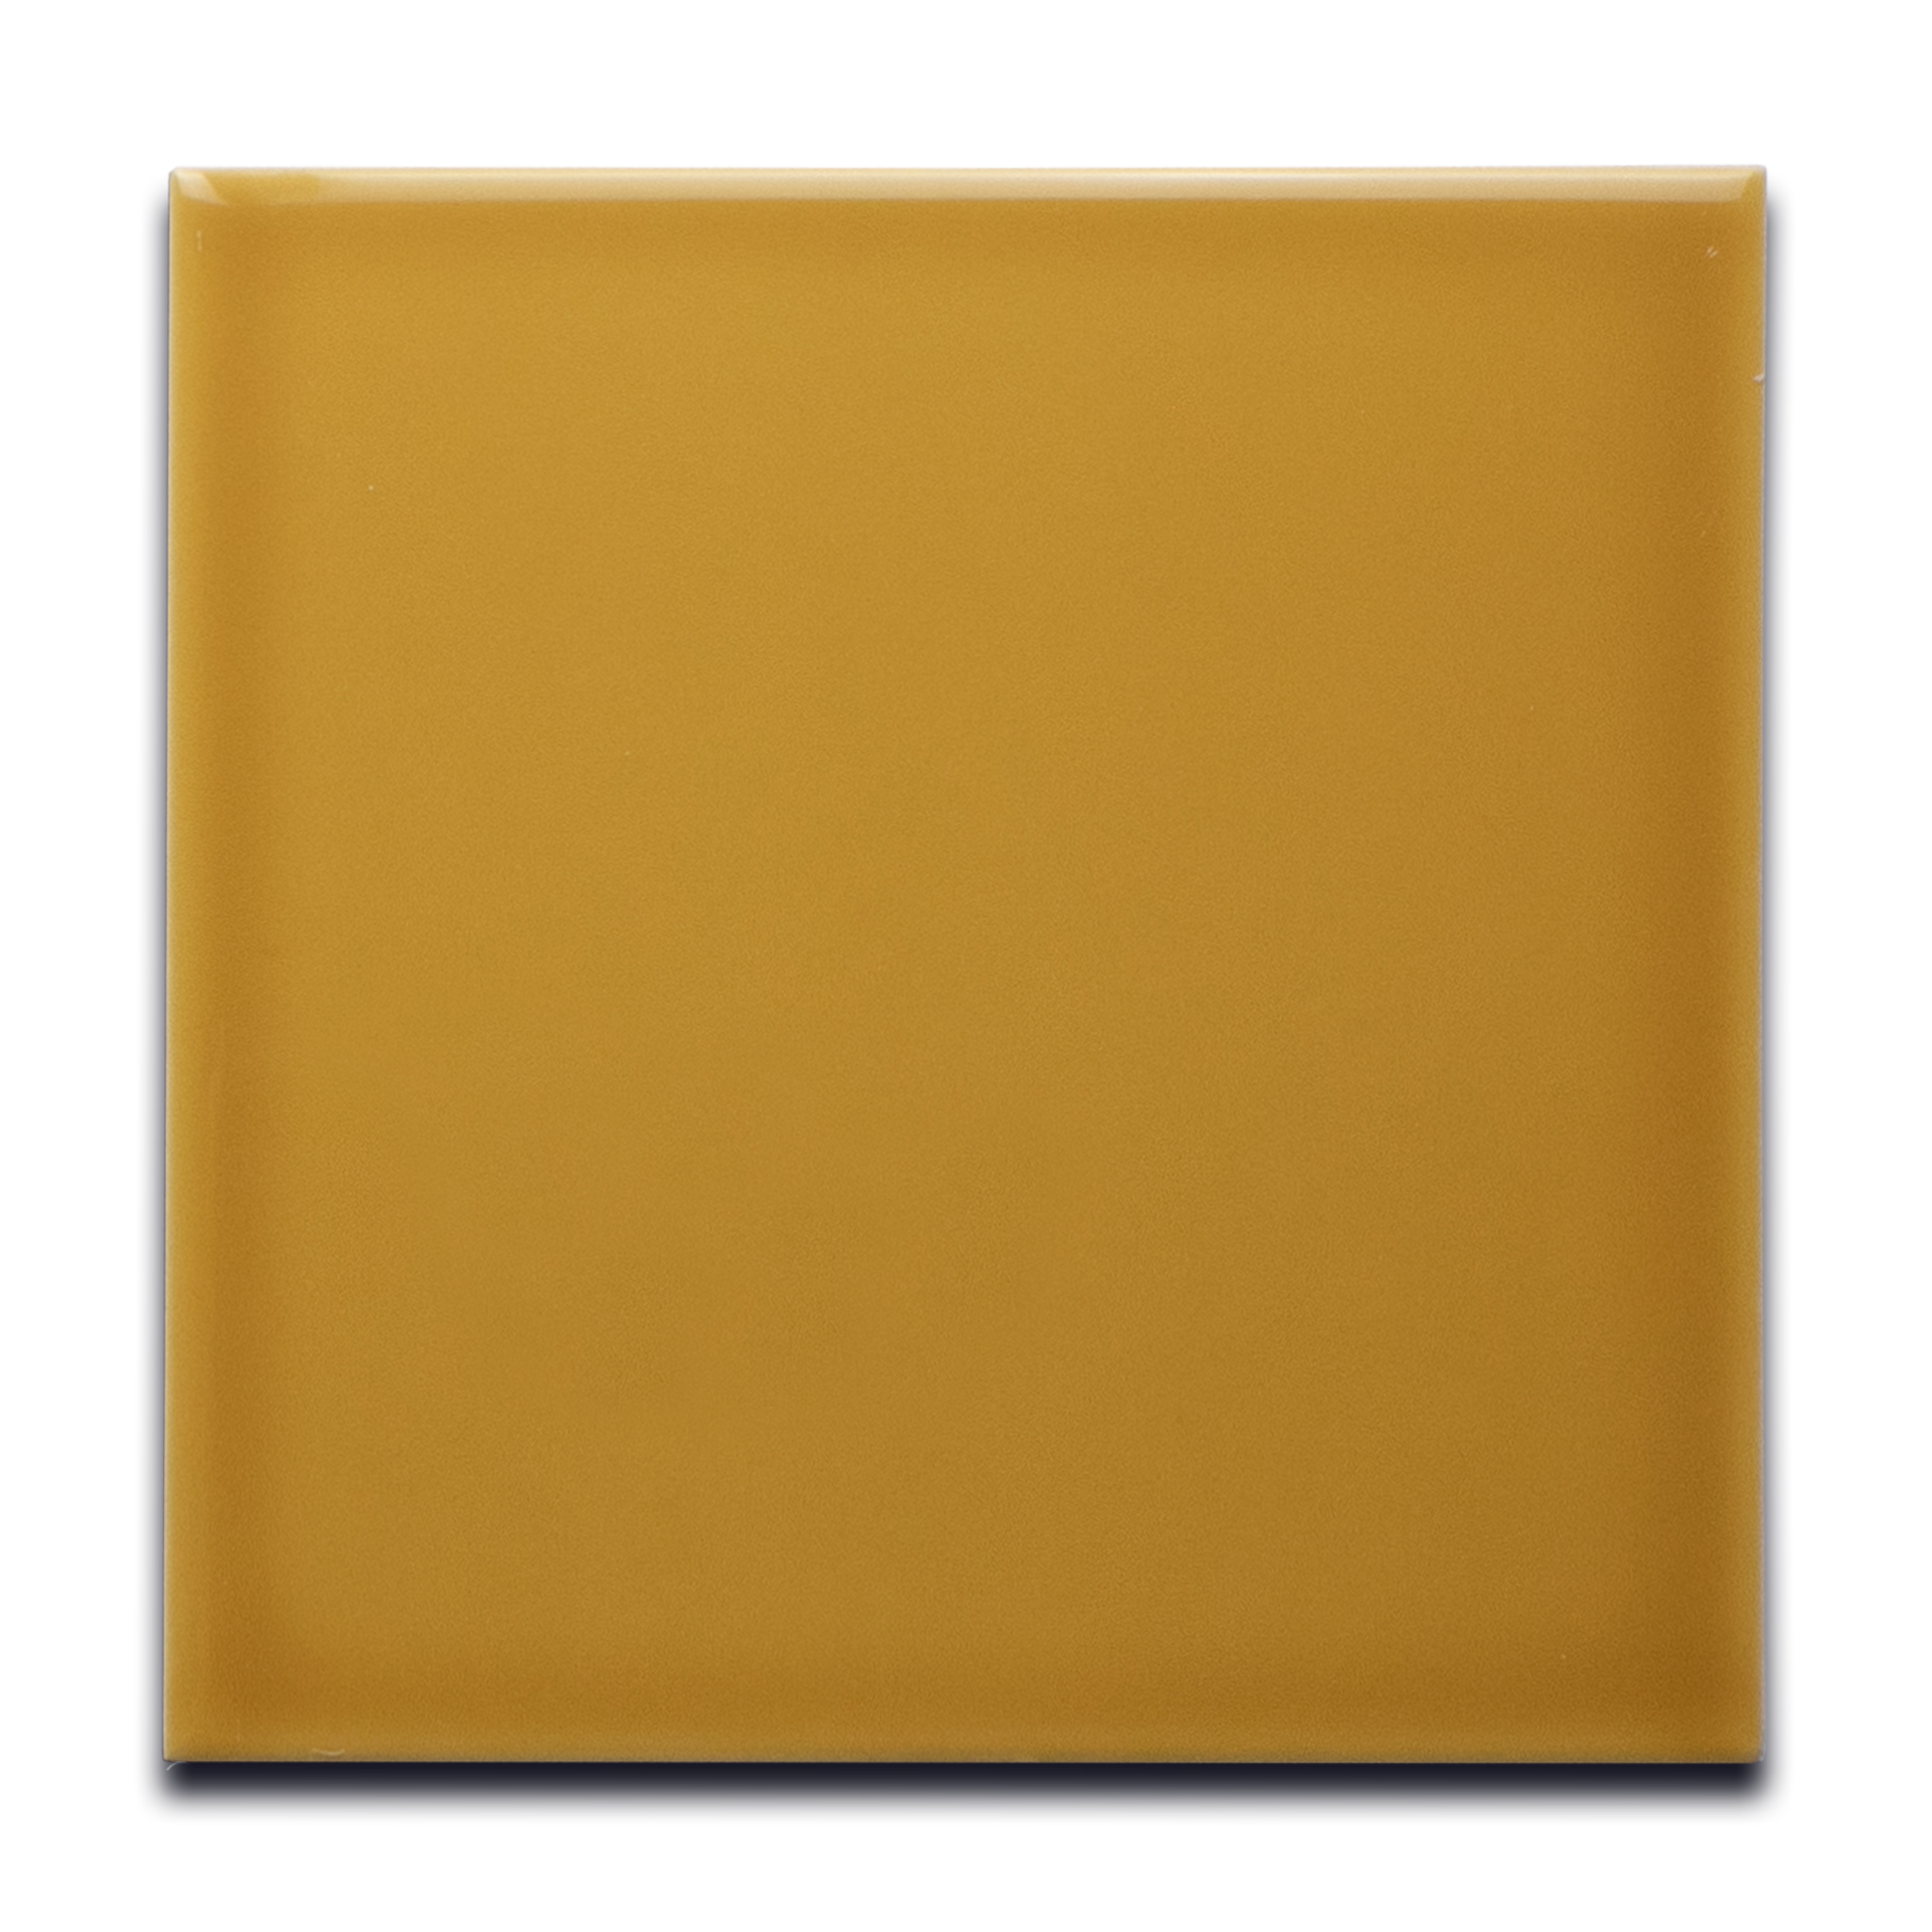 Mustard Yellow 6x6